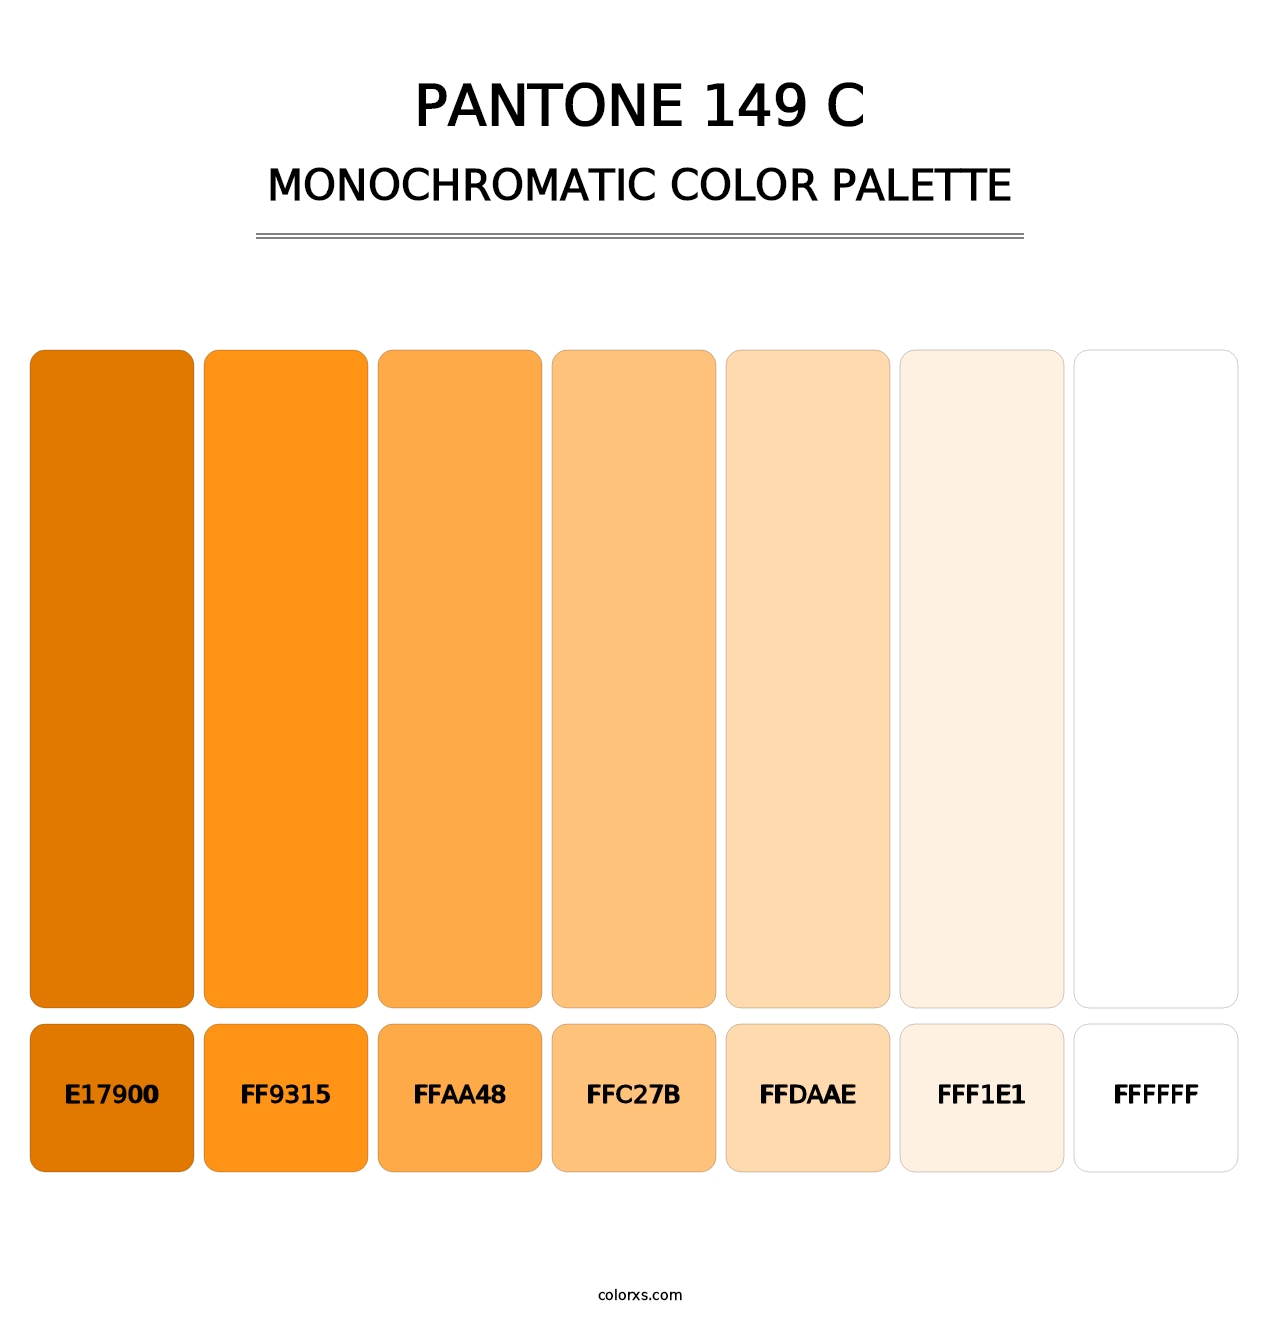 PANTONE 149 C - Monochromatic Color Palette